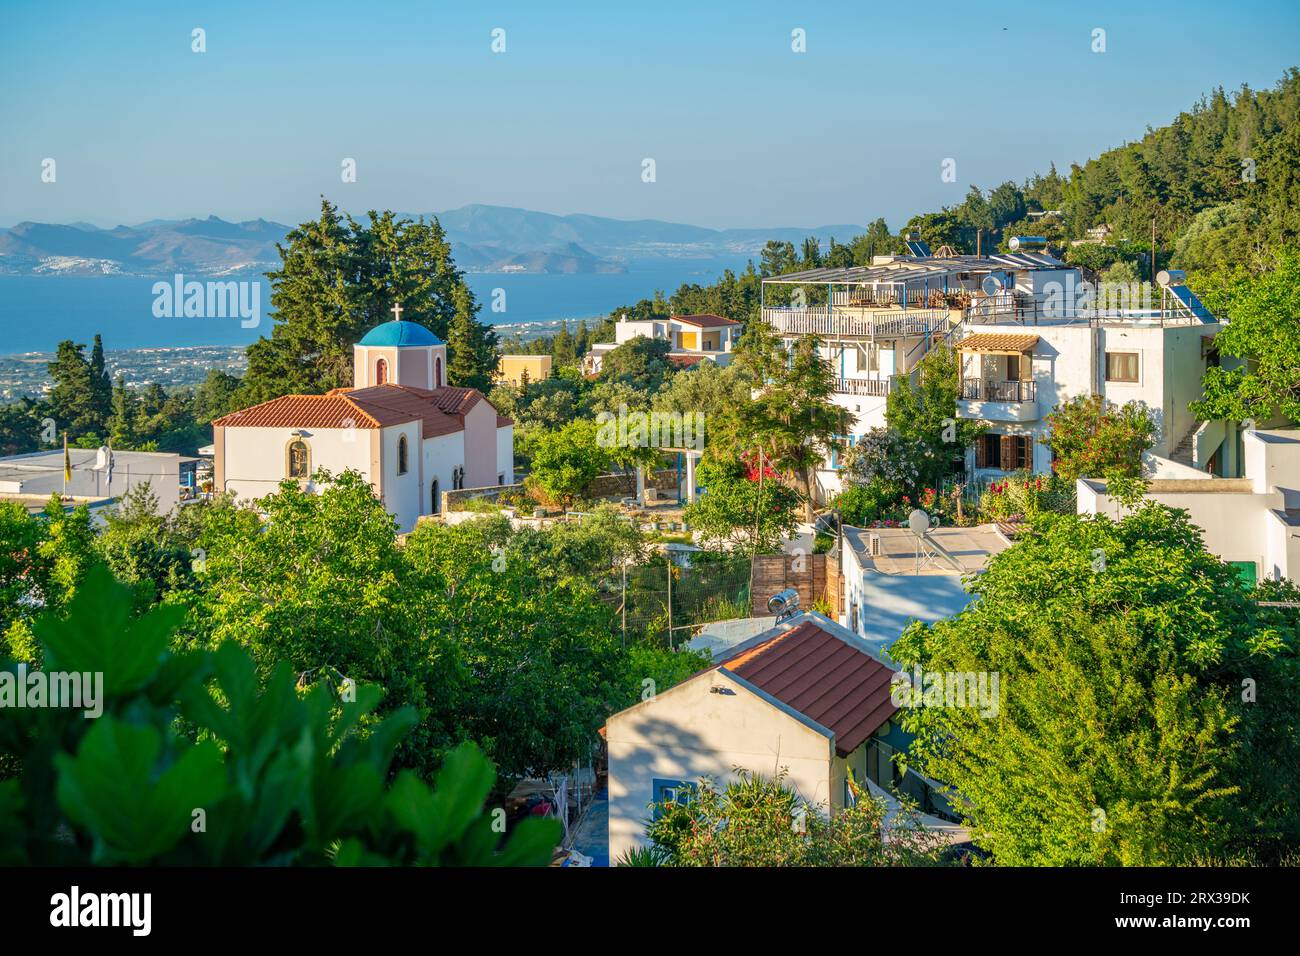 Vue de l'église orthodoxe grecque avec mer en arrière-plan, village de Zia, ville de Kos, Kos, Dodécanèse, îles grecques, Grèce, Europe Banque D'Images